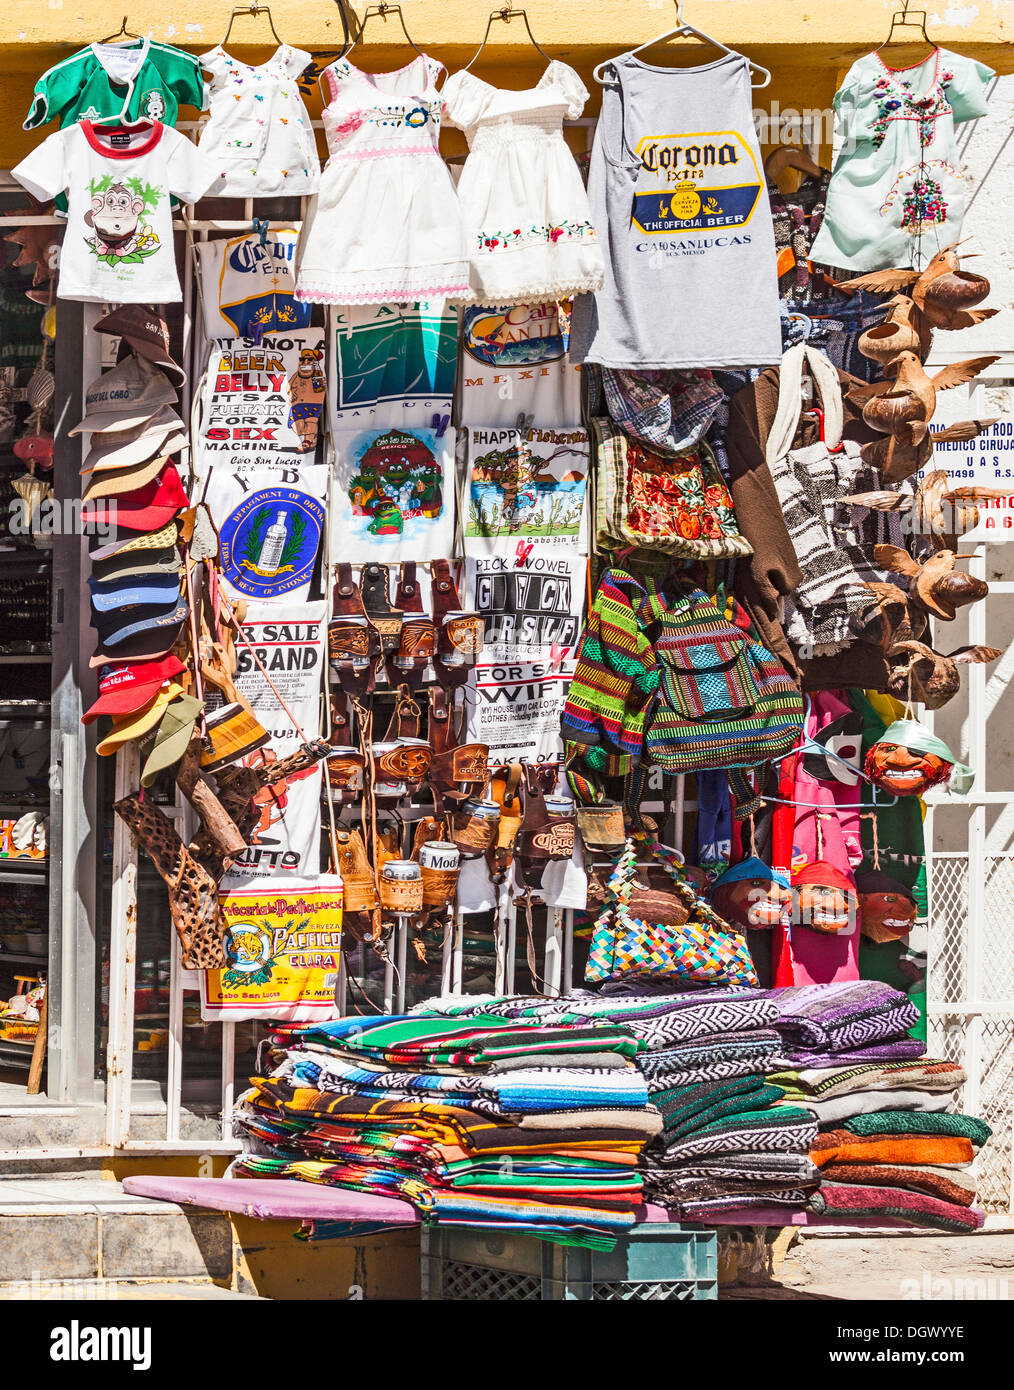 Décrochage souvenirs vente de vêtements,Sacs, serapes, sculpté et de produits en cuir dans le centre de Cabo San Lucas, Baja California Sur, Mexique Banque D'Images